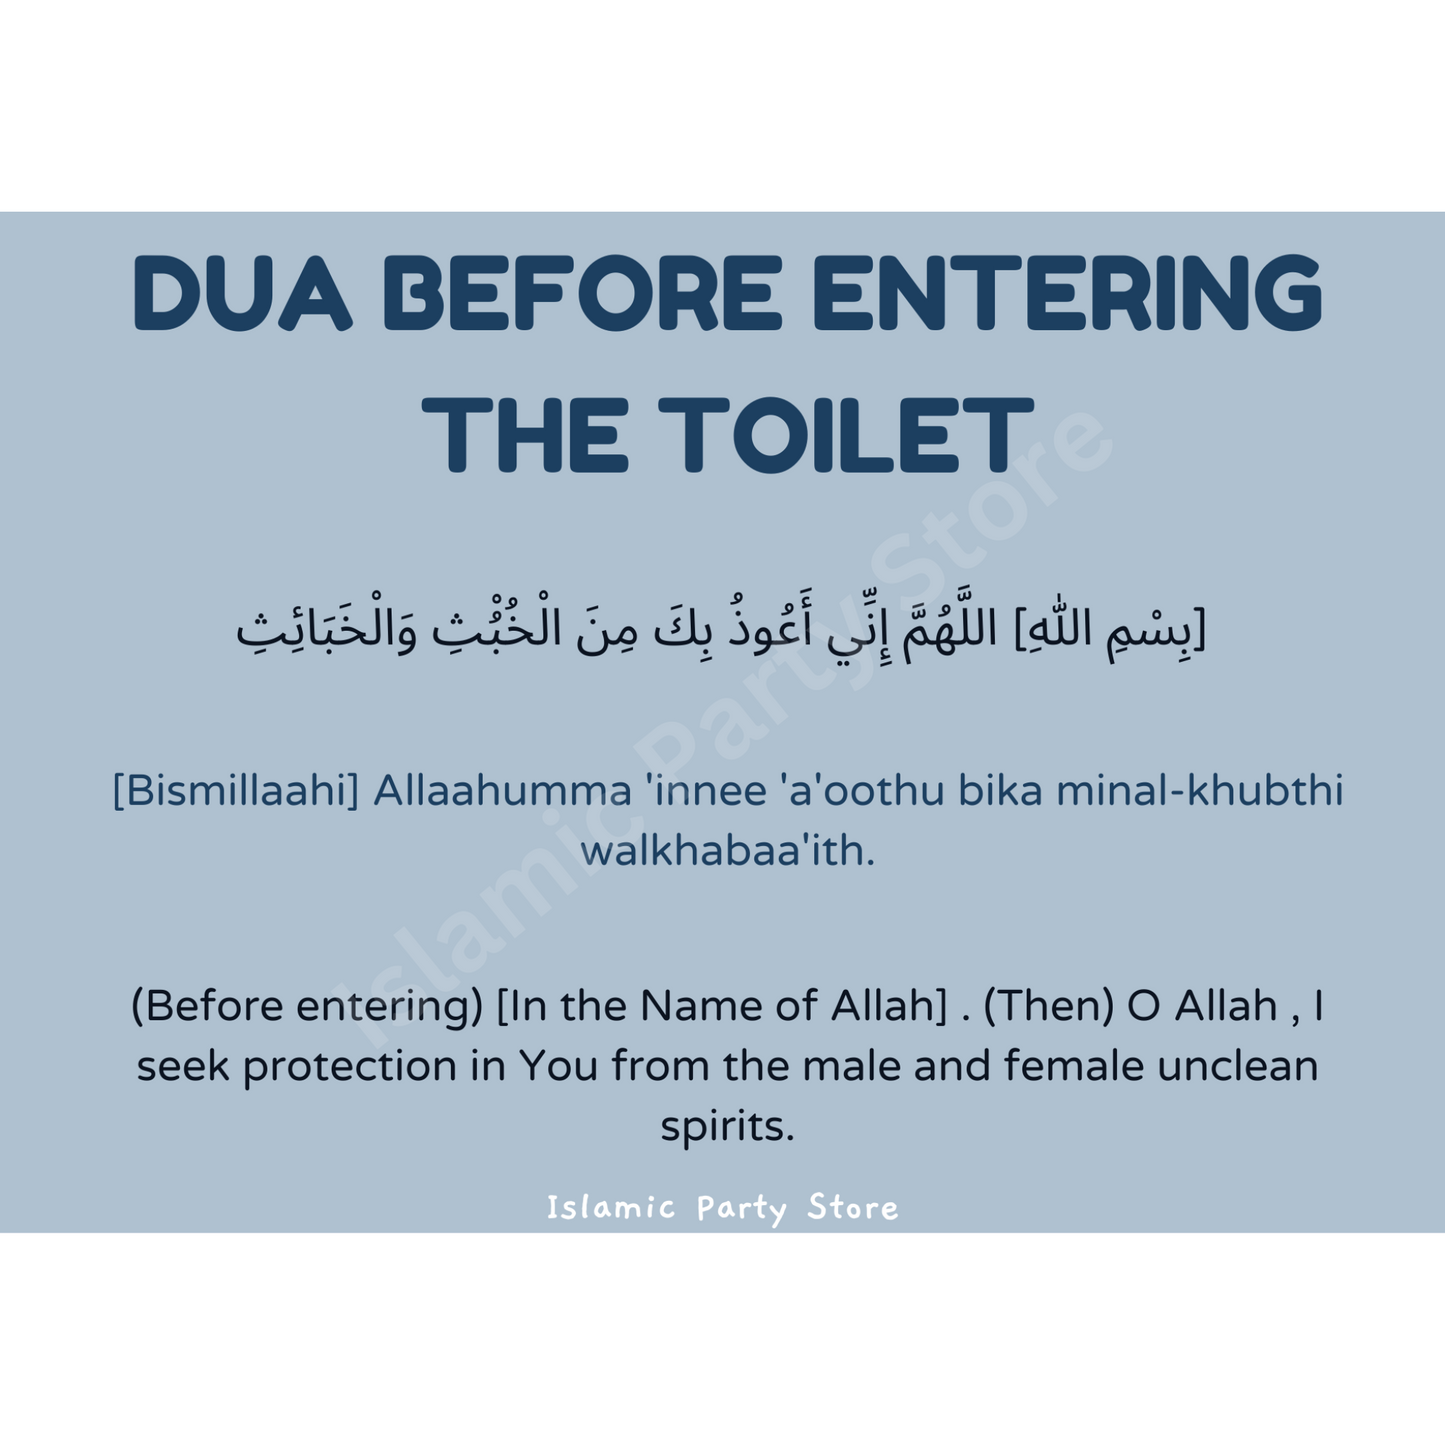 Entering the toilet dua